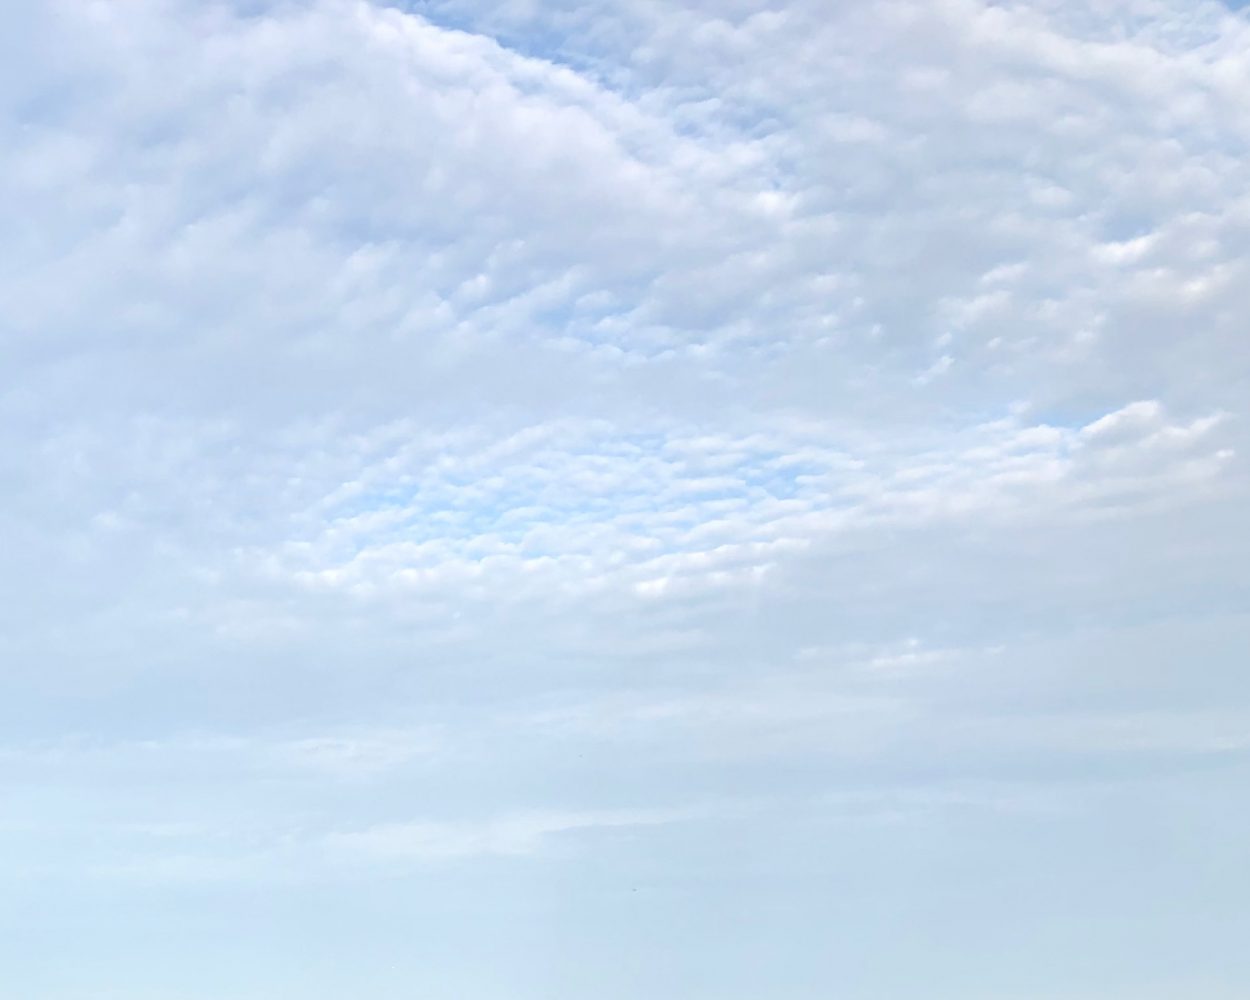 Cirrocumulus clouds against a blue sky